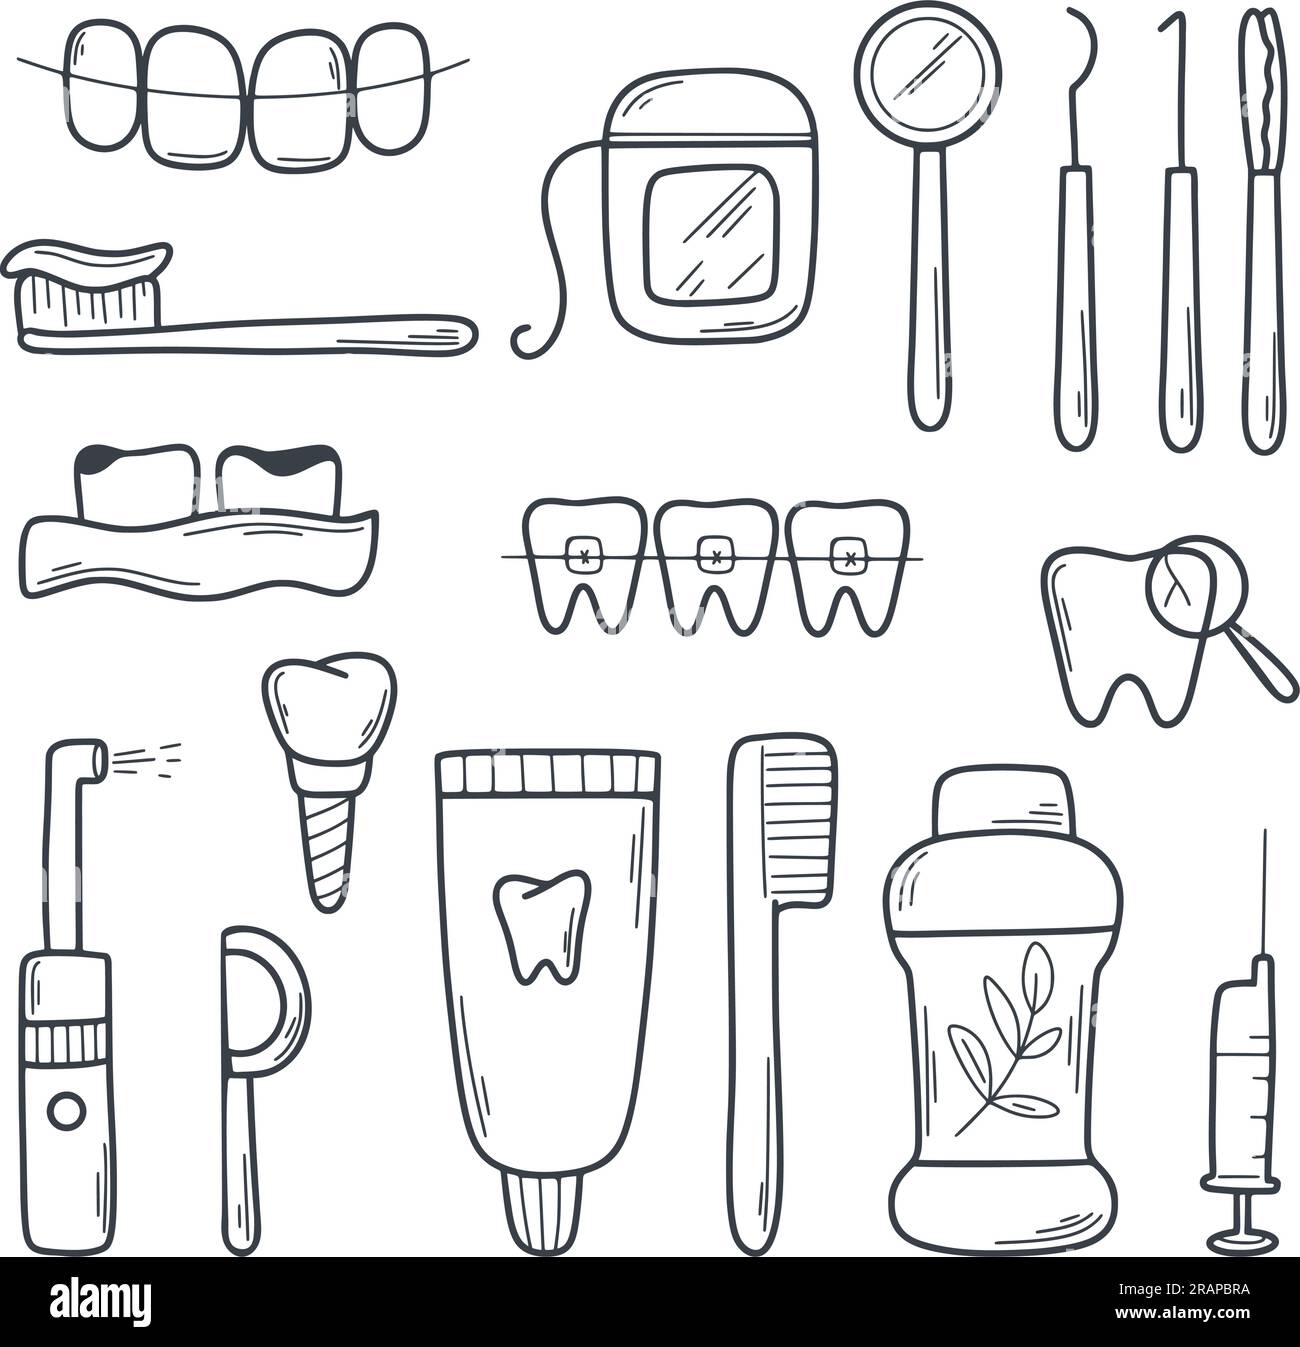 Icône de doodle de jeu dentaire. Symboles de santé bucco-dentaire. Instruments dentaires, dents, prothèses, produits d'hygiène, irrigateur, fil dentaire, implant. Symbole simple Illustration de Vecteur